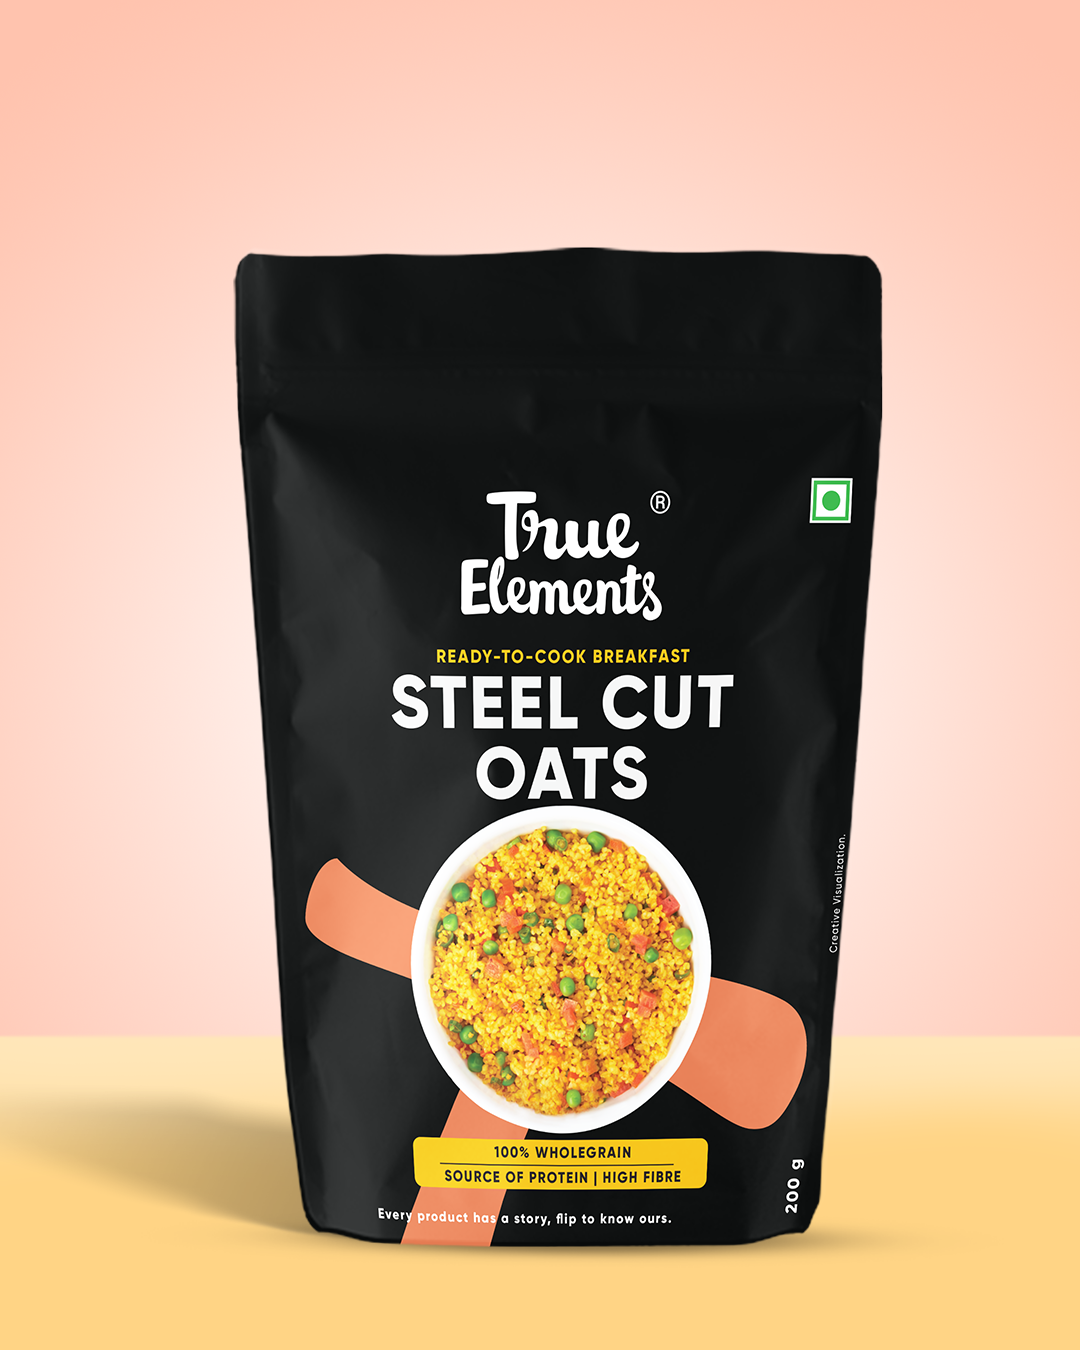 True elements steel cut oats 200gm Pouch.